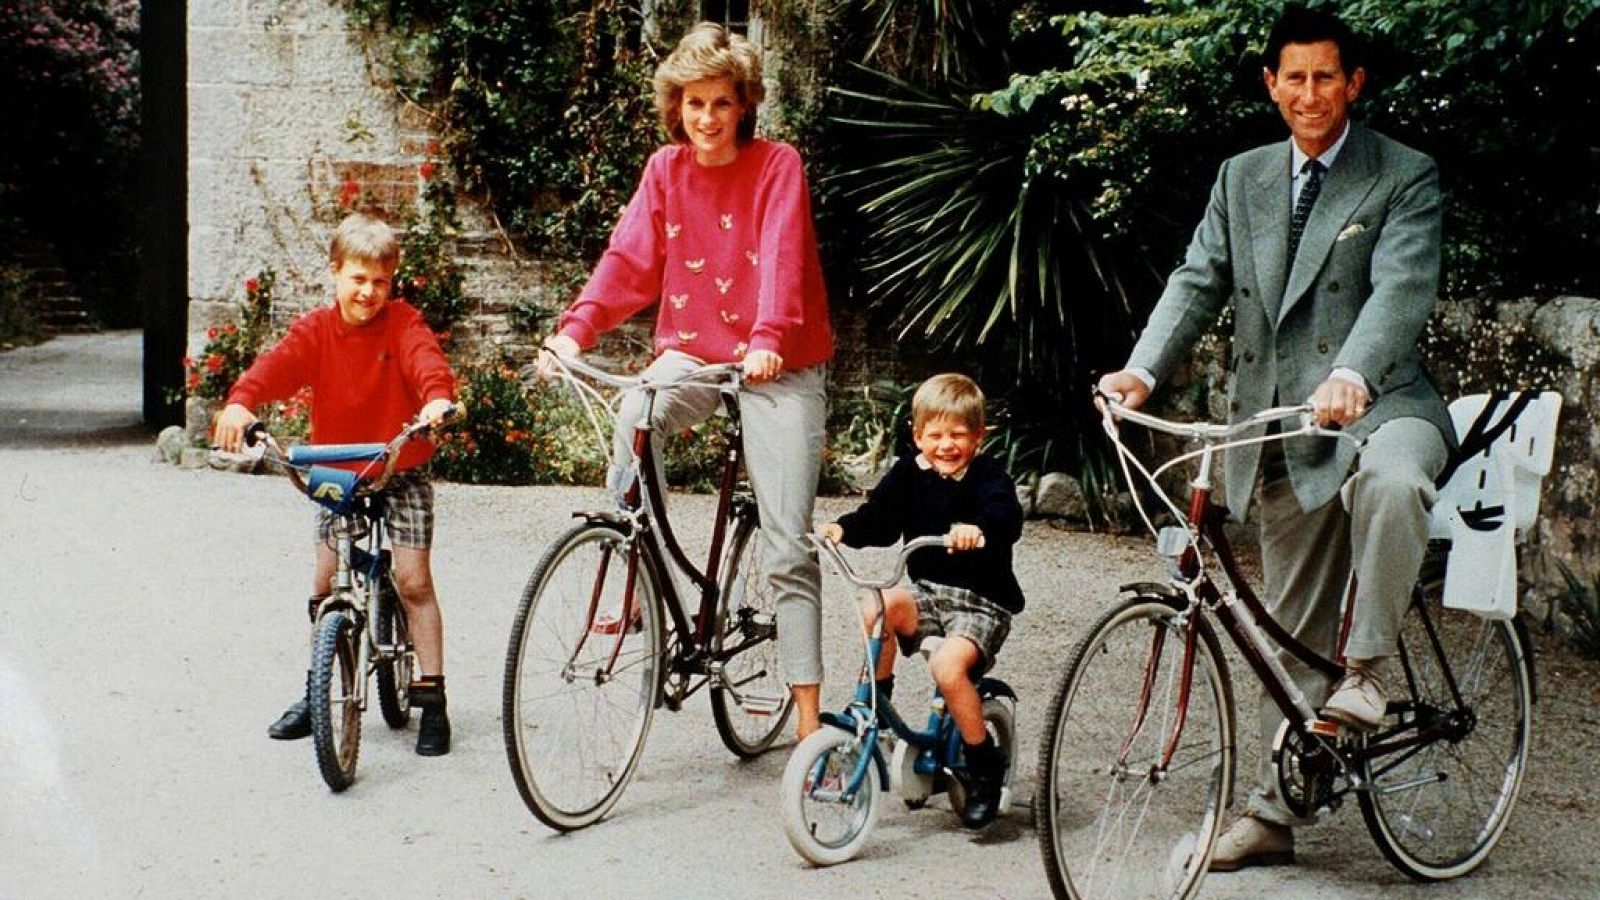 Sale a subasta la bicicleta de Diana de Gales